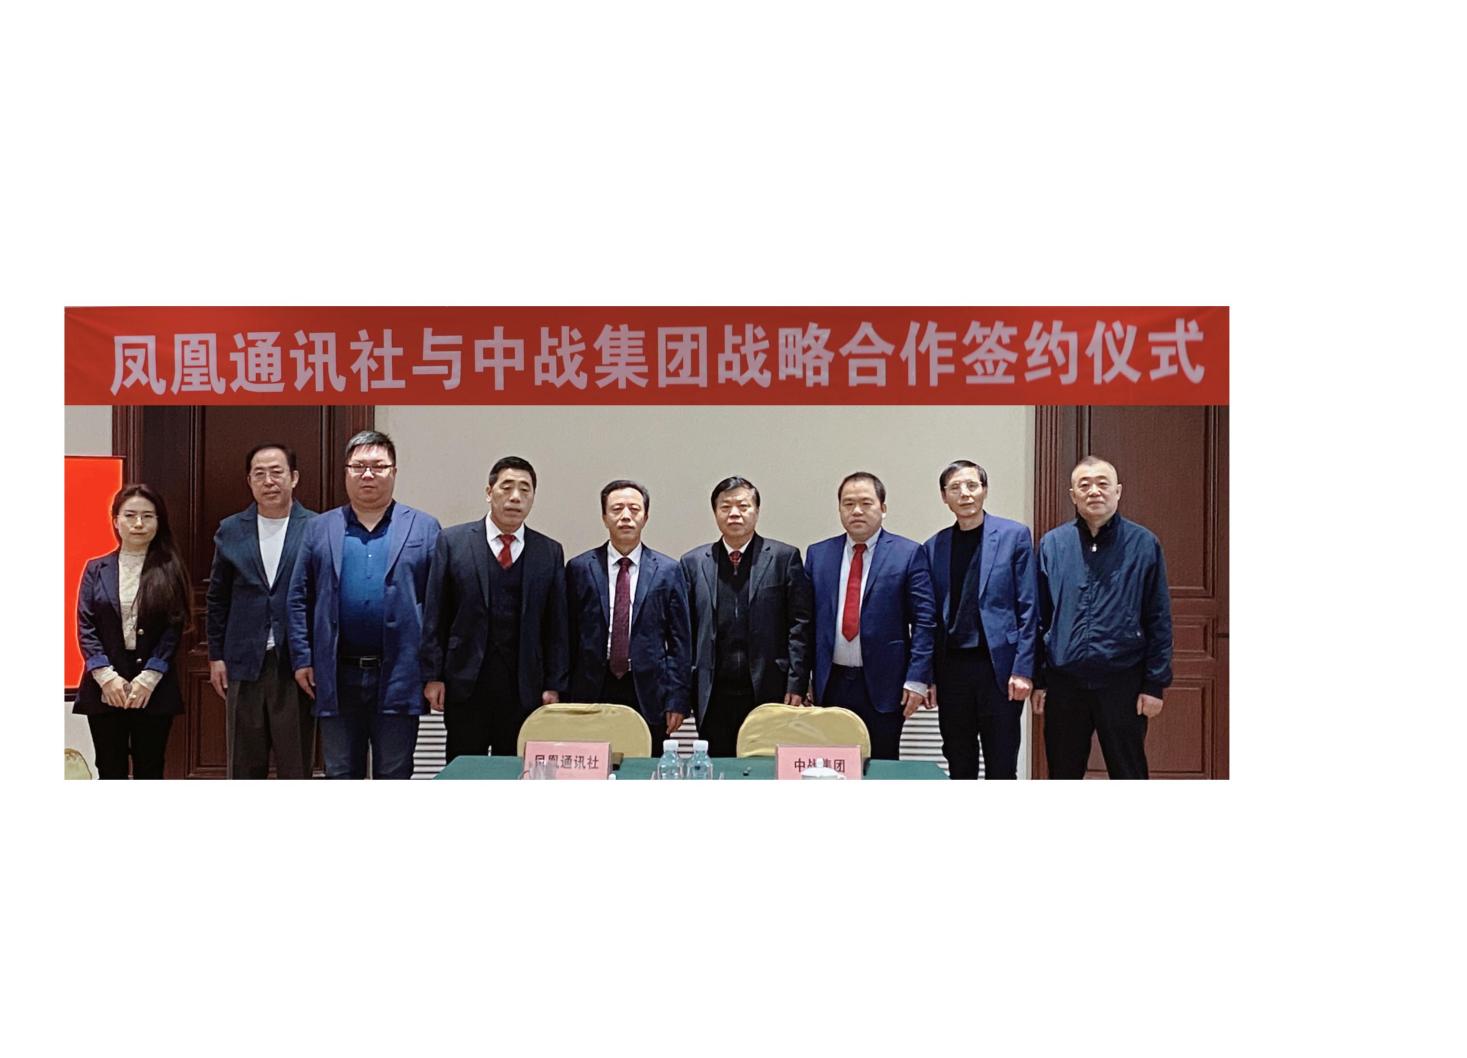 凤凰通讯社与中战集团签署战略合作协议